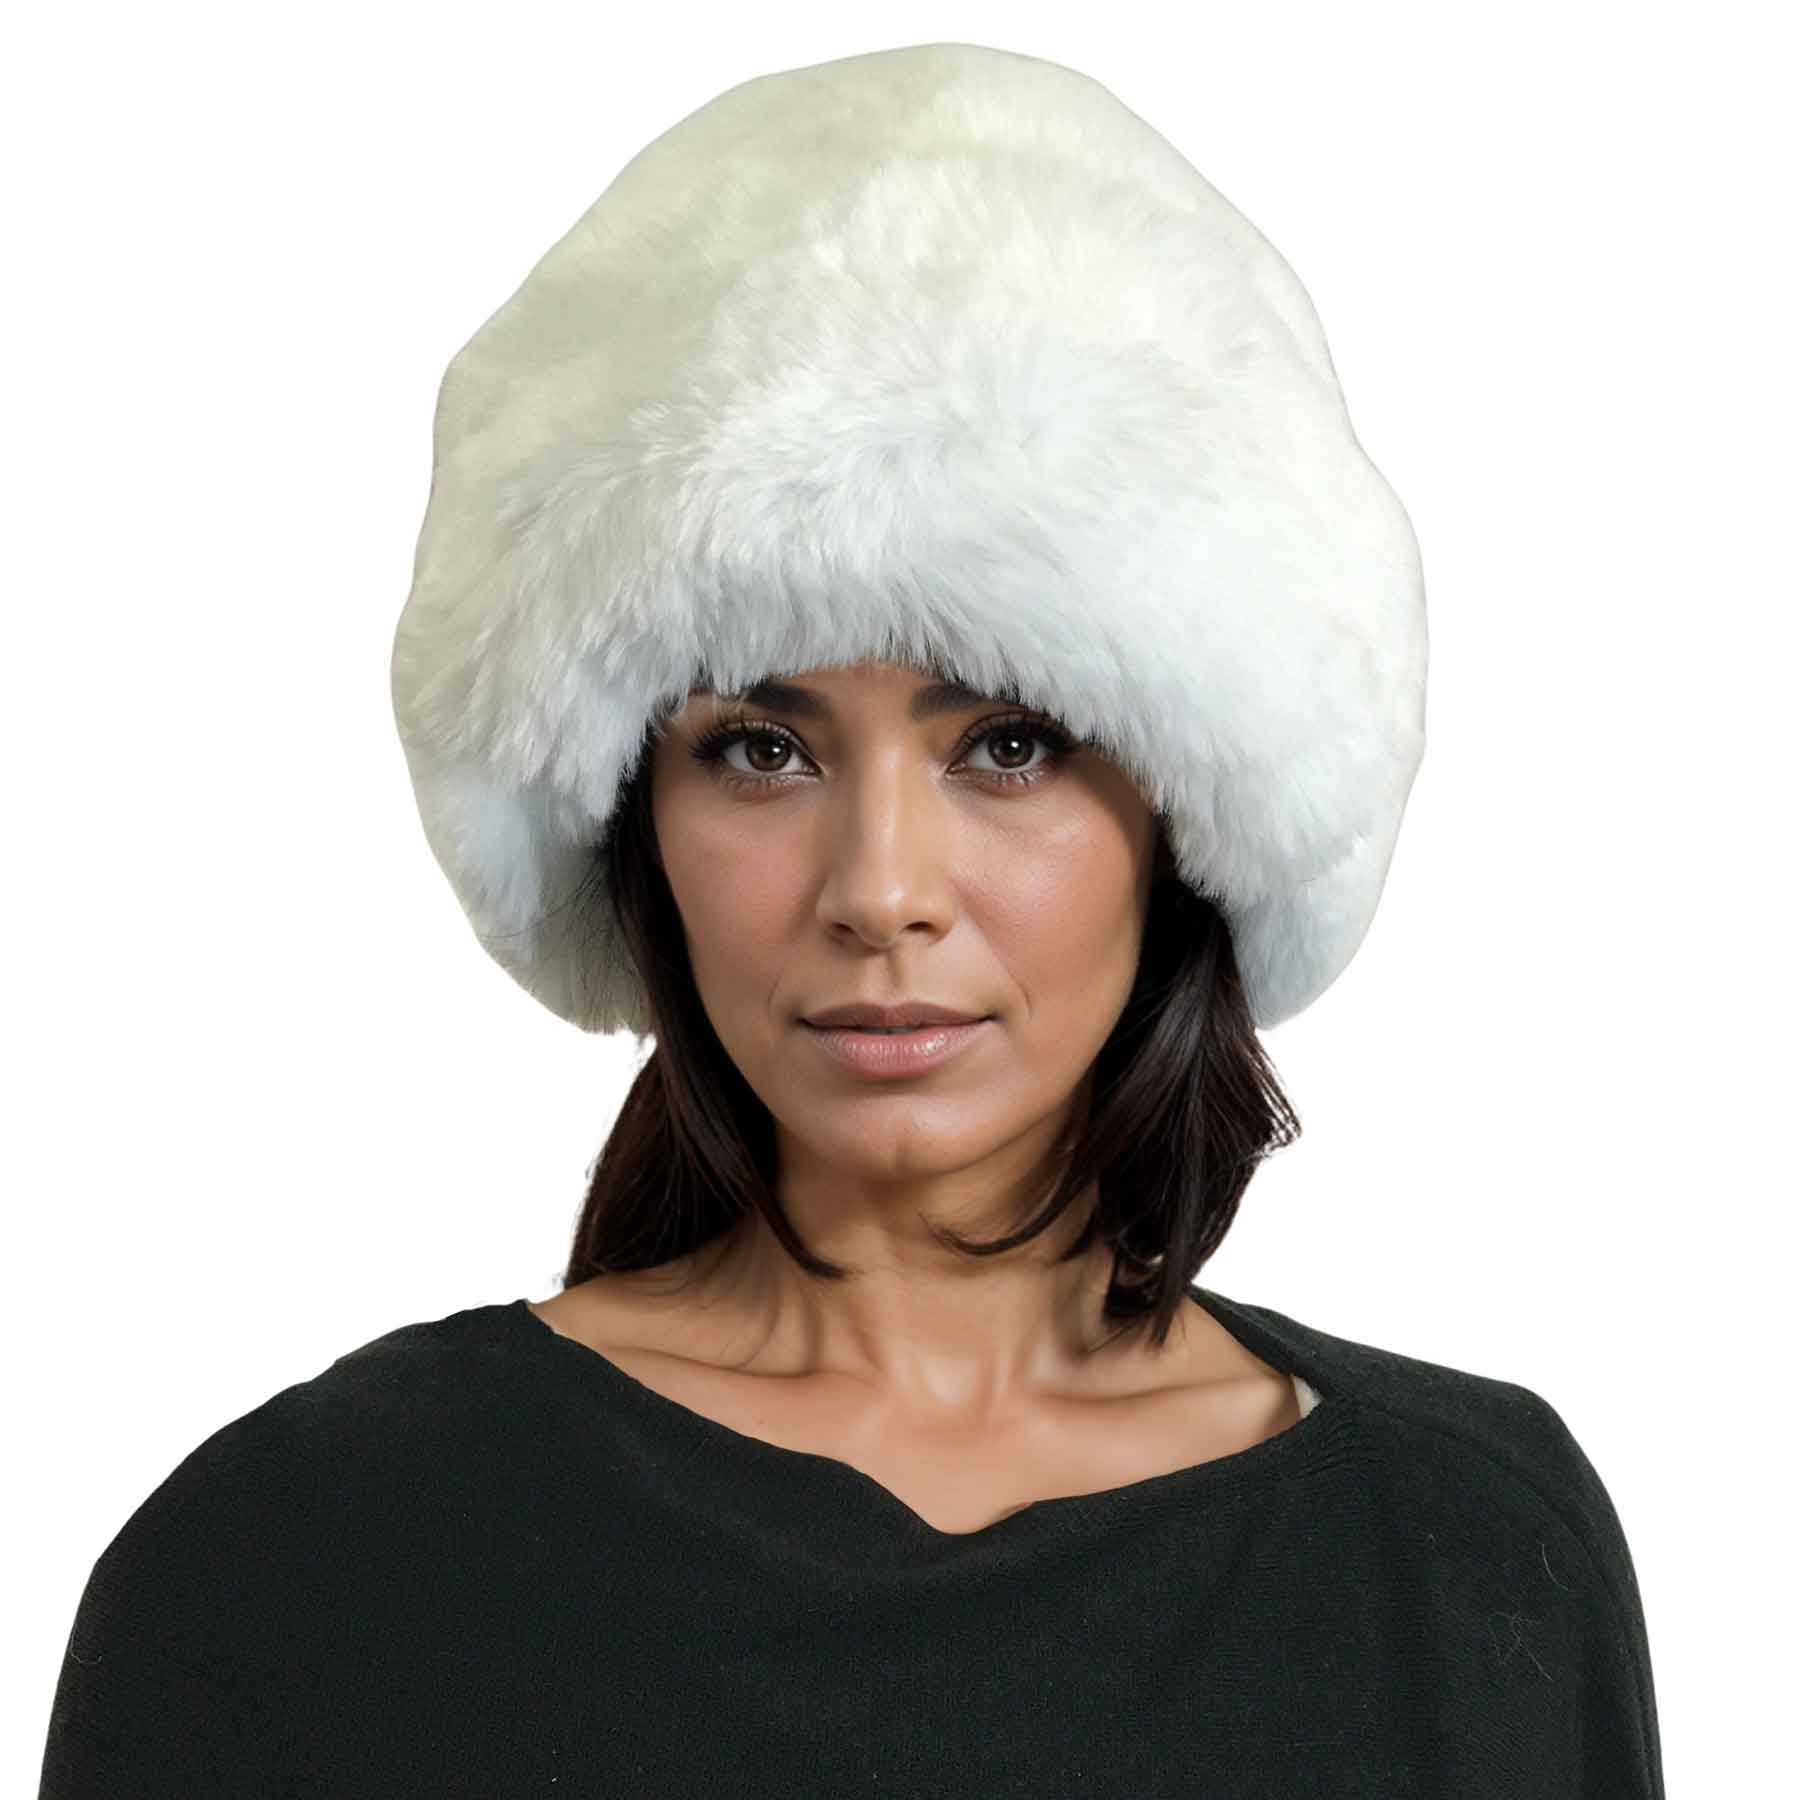 White<br>
Faux Rabbit Cossack Hat
